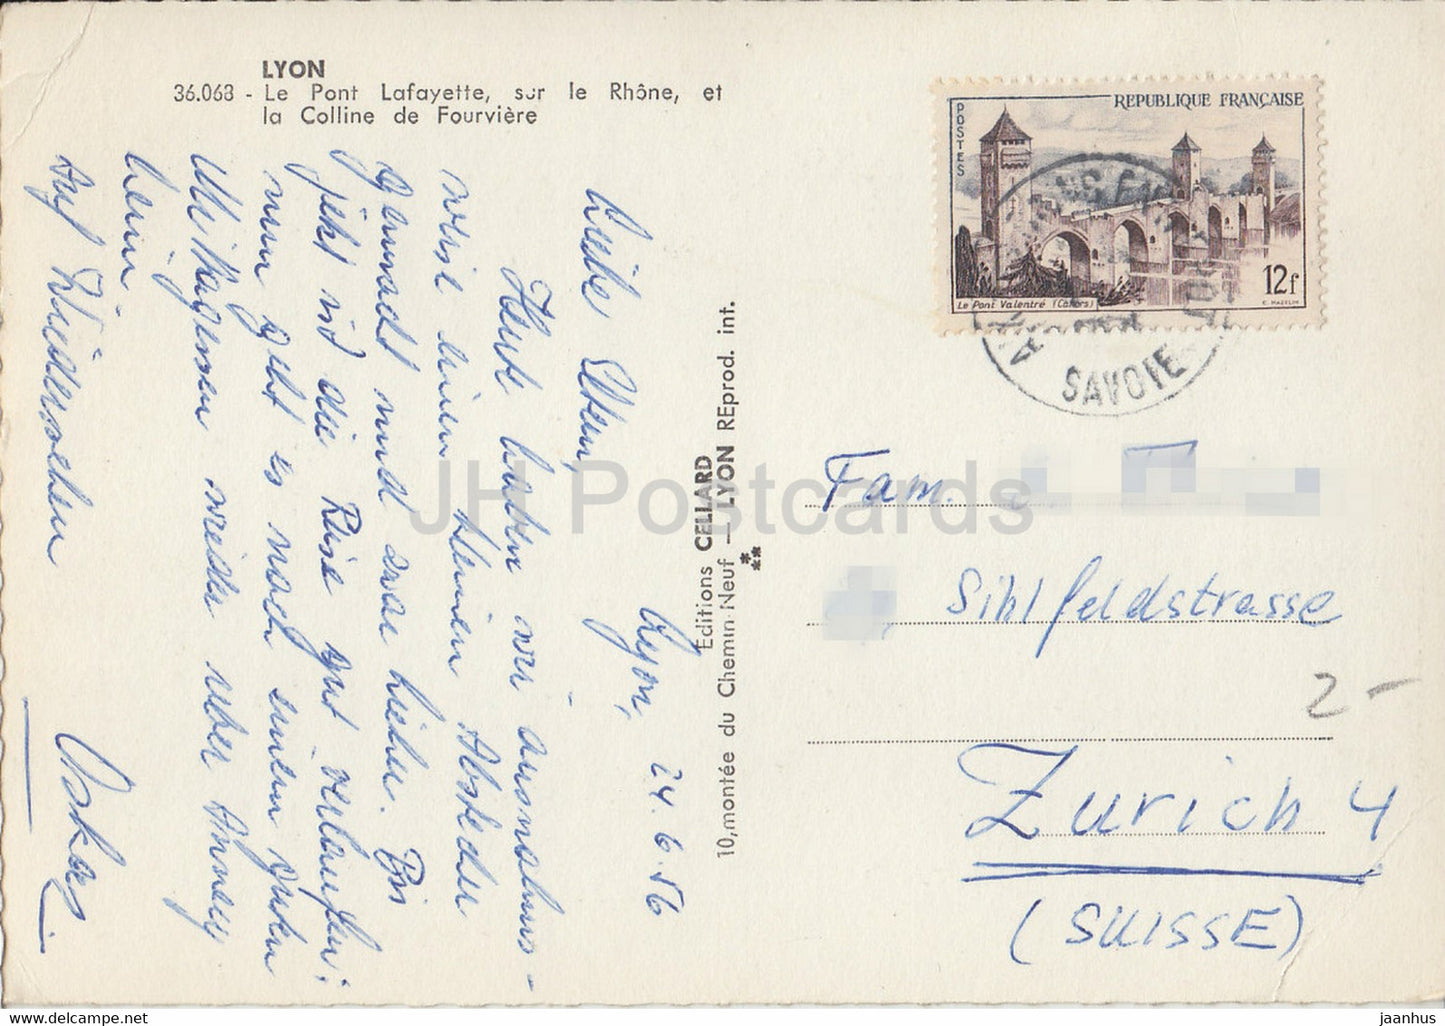 Lyon - Le Pont Lafayette sur le Rhone et la Colline de Fourviere - Brücke - Straßenbahn - alte Postkarte - 1956 - Frankreich - gebraucht